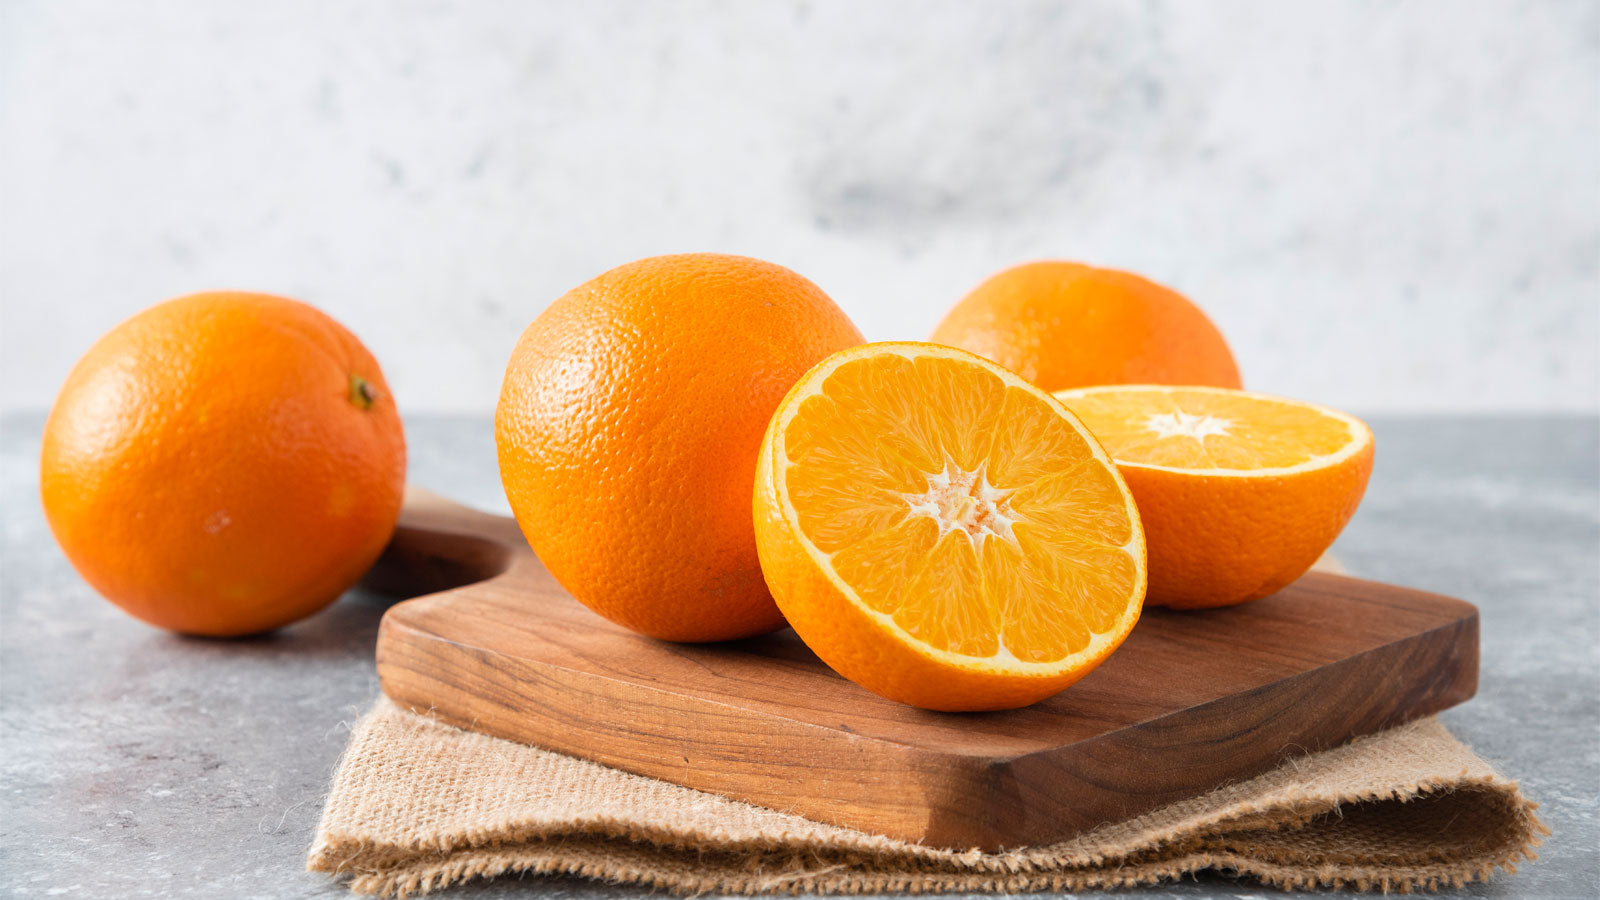 The varieties of Greek orange